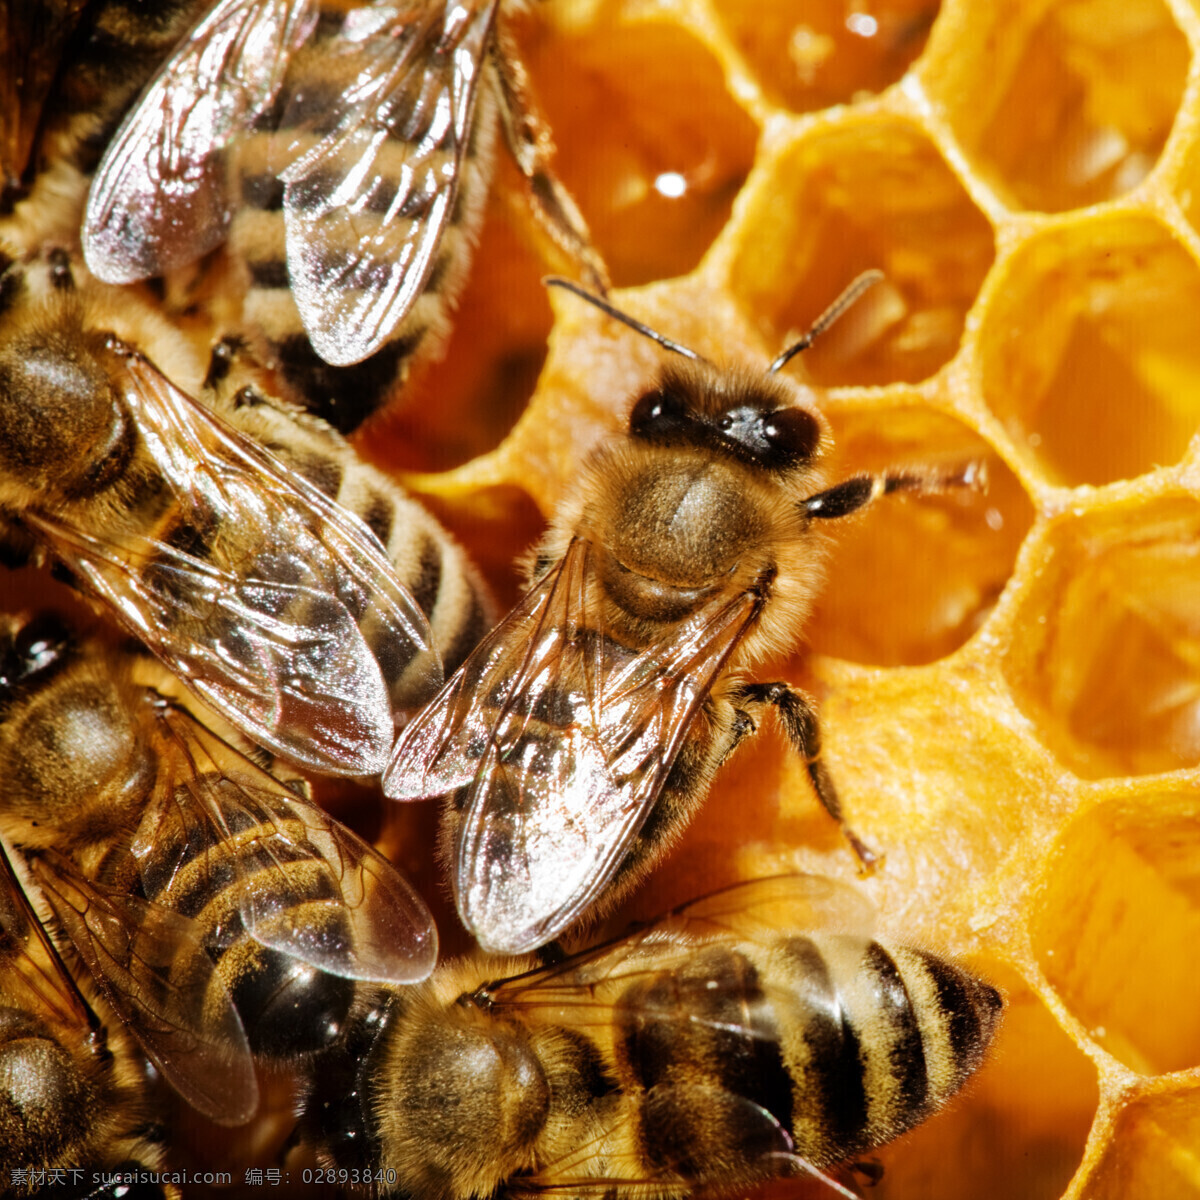 蜜蜂 蜂蜜 蜂糖 花蜜 食物 食材 糖分 果糖 乳糖 蜂王浆 蜜糖 动物 生物世界 昆虫